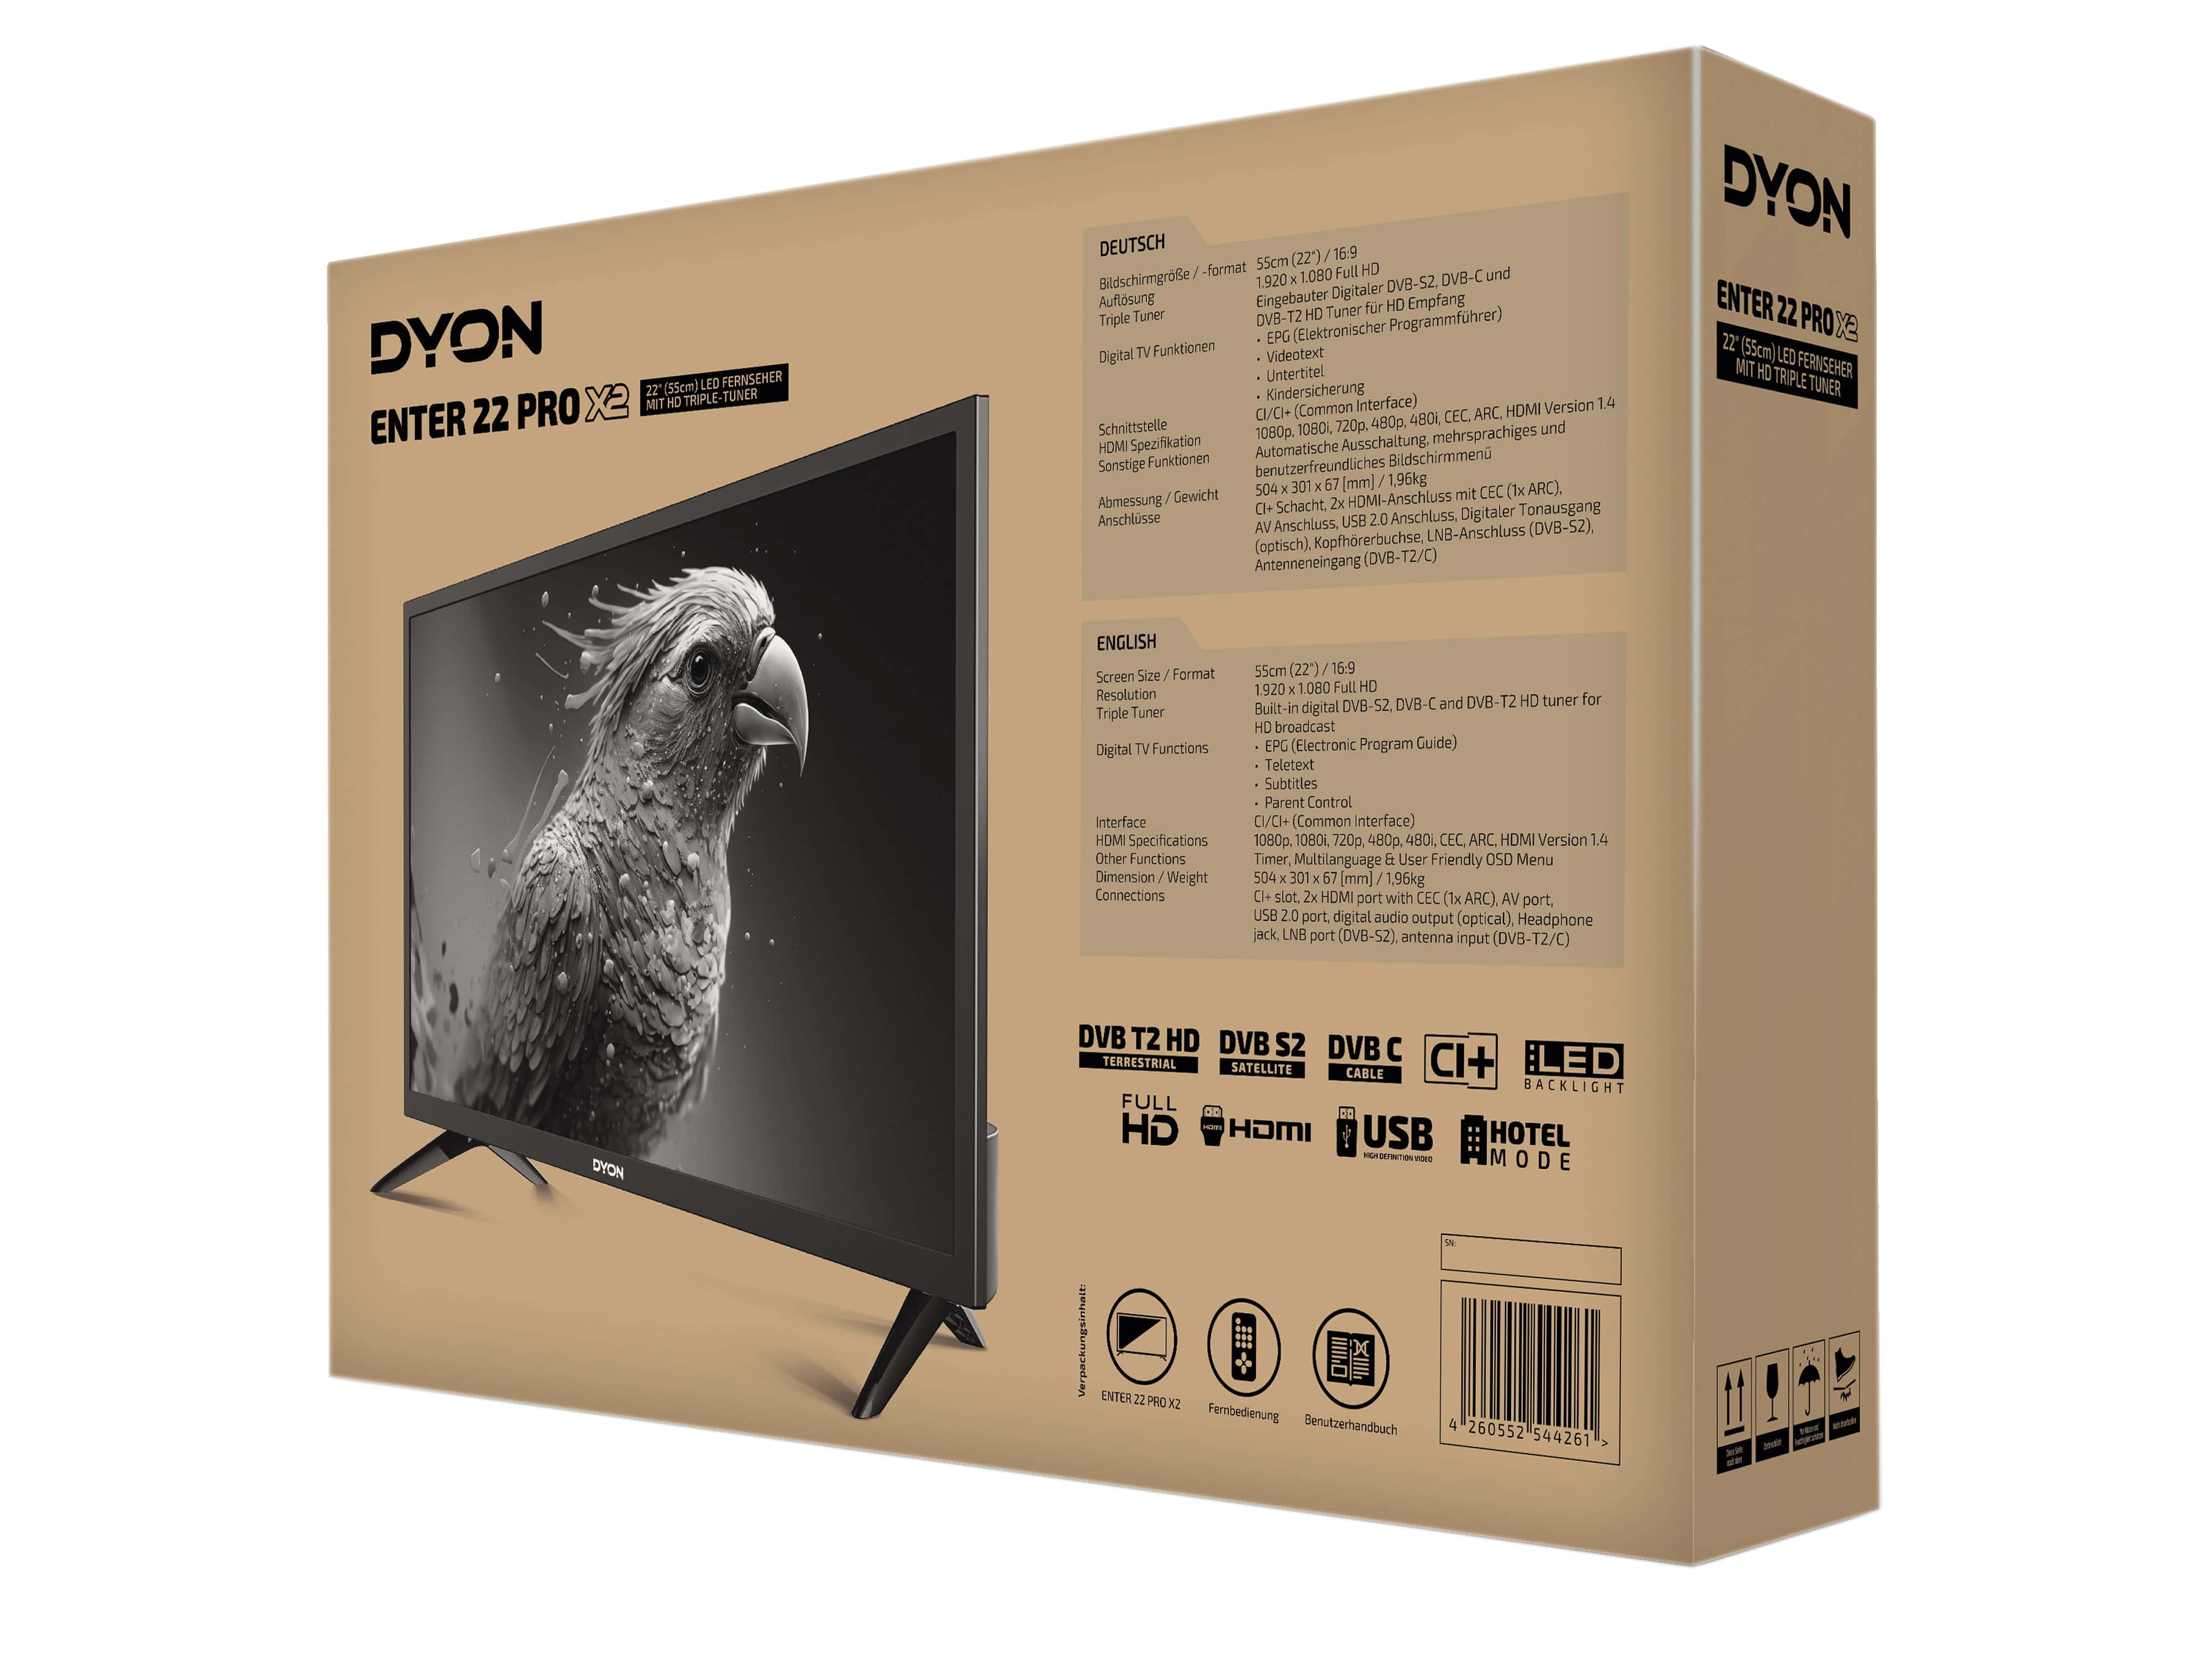 DYON LED-TV Enter 22 Pro X2, 55 cm (22"), EEK E, FullHD